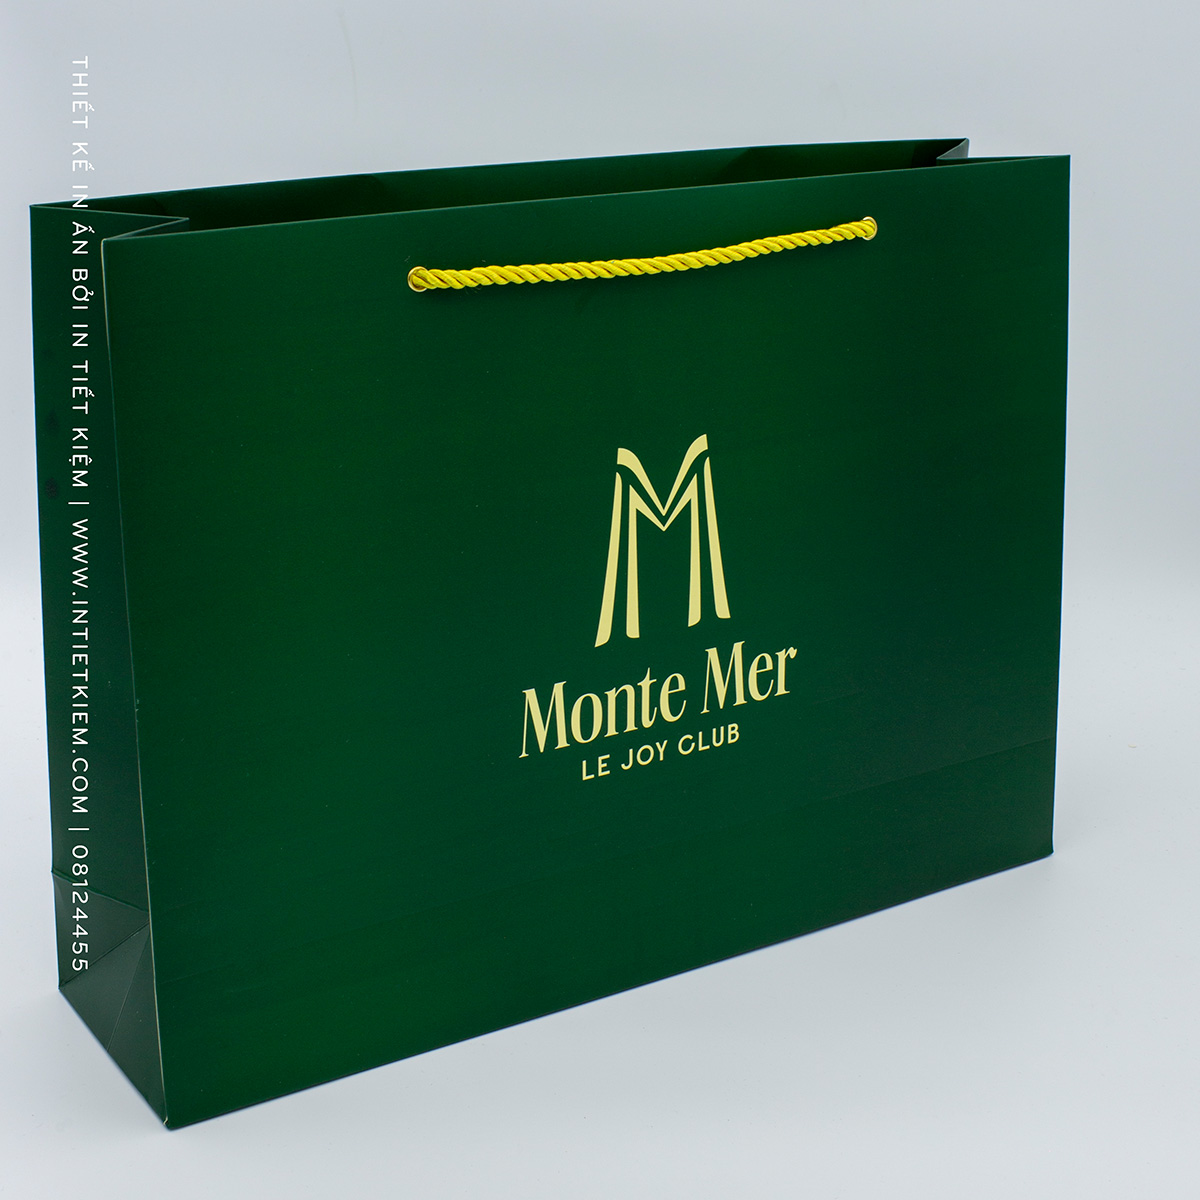 In túi giấy thời trang Monte-Mer